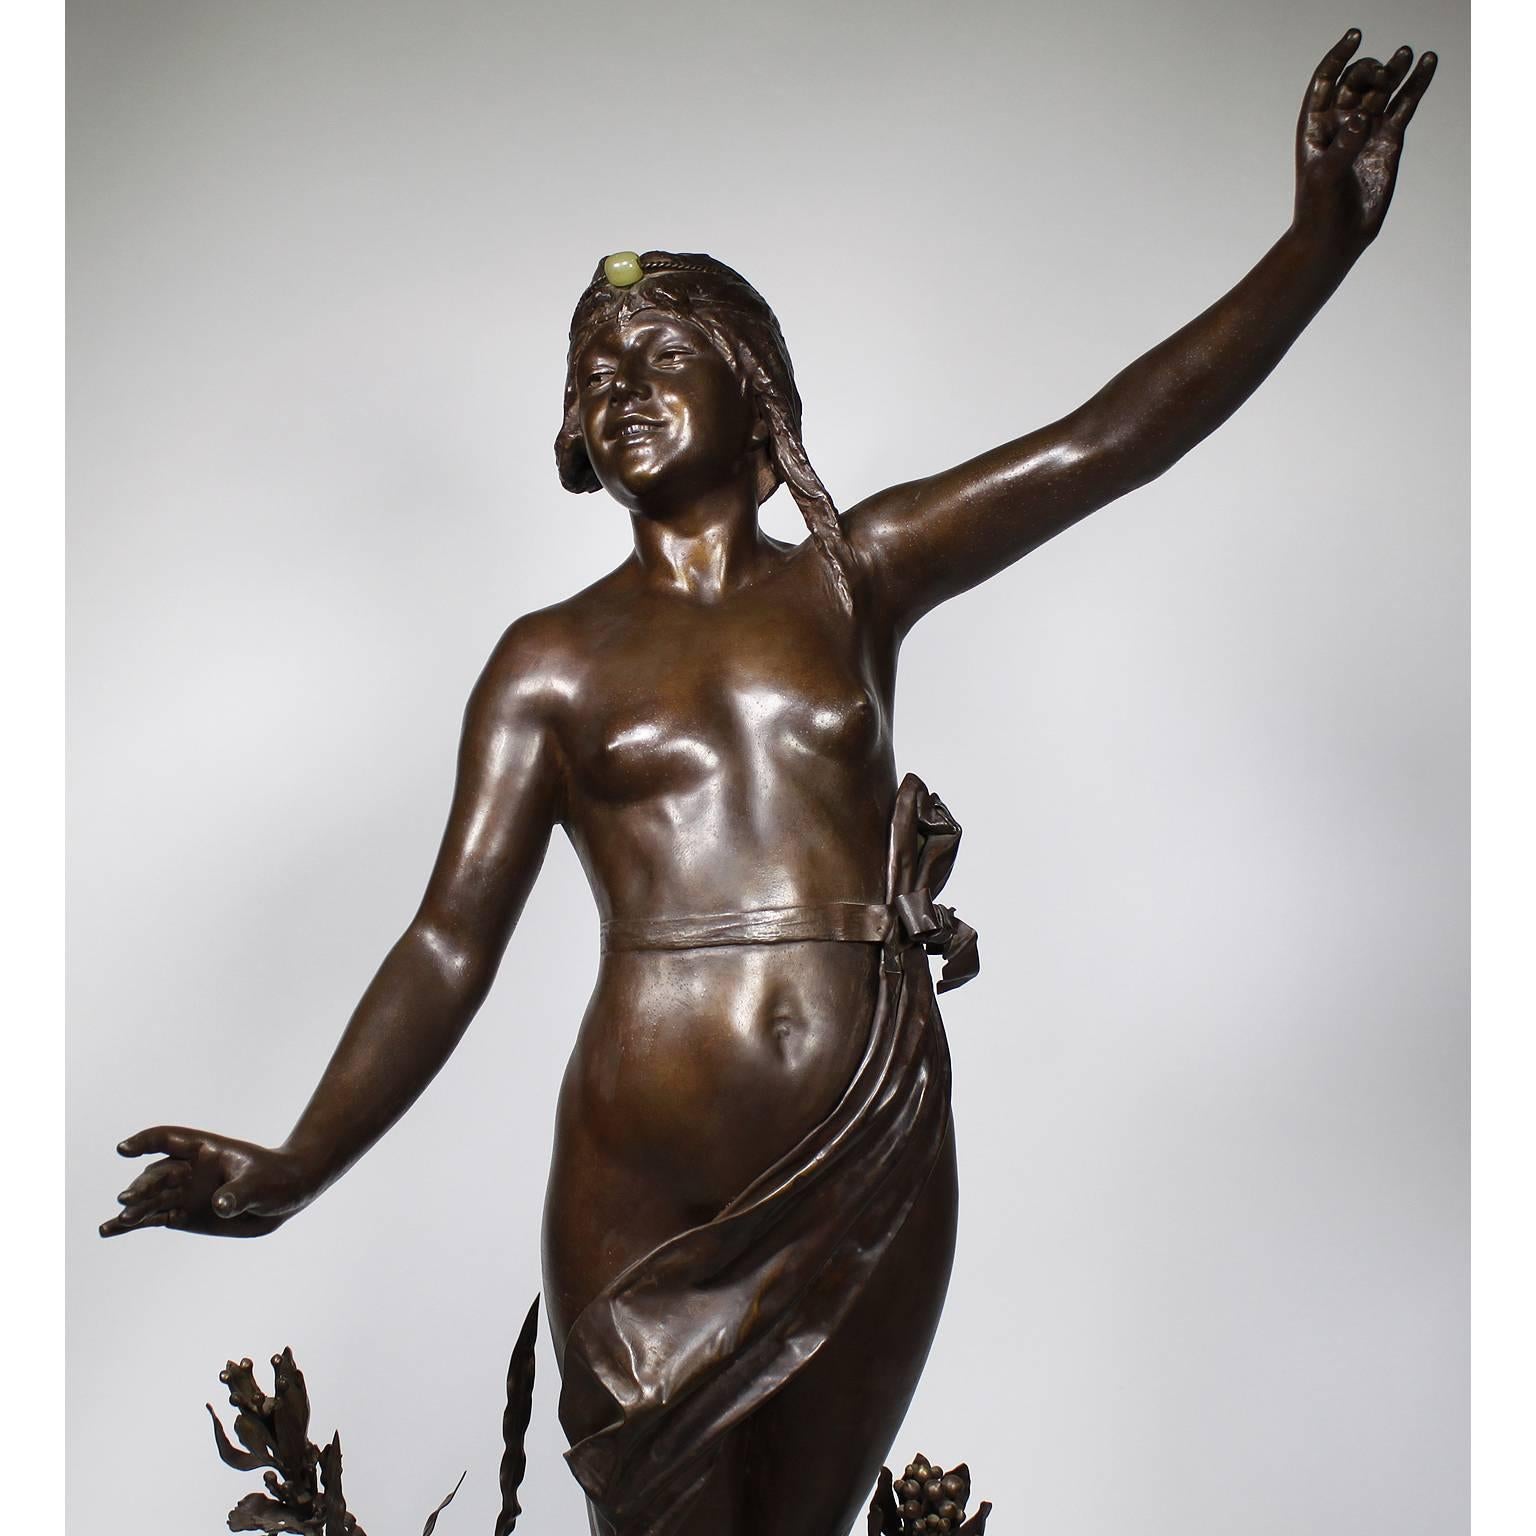 Eine imposante, große französische Art-Deco-Zinnfigur (Petit-Bronze) eines stehenden halbnackten orientalischen Mädchens mit brauner Patina, die Louis Hottot (Franzose, 1834-1905) zugeschrieben wird. Die lächelnde, junge, barbusige Schönheit posiert